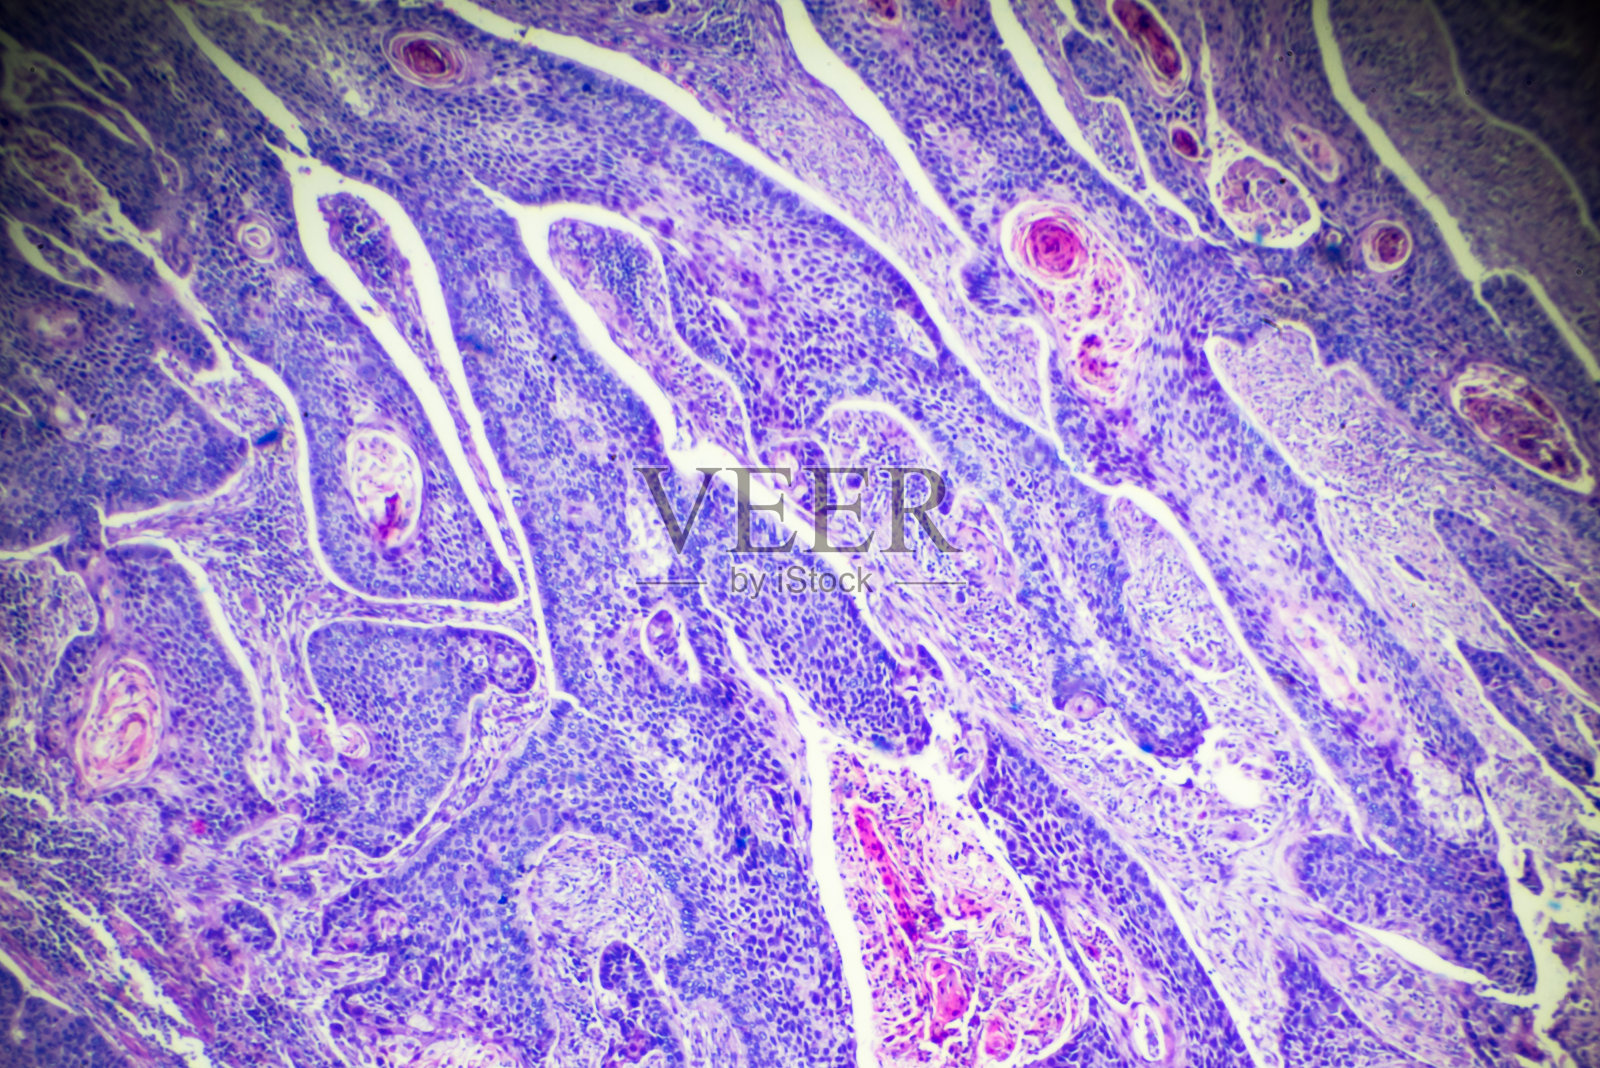 食管癌(高分化鳞状病变)照片摄影图片